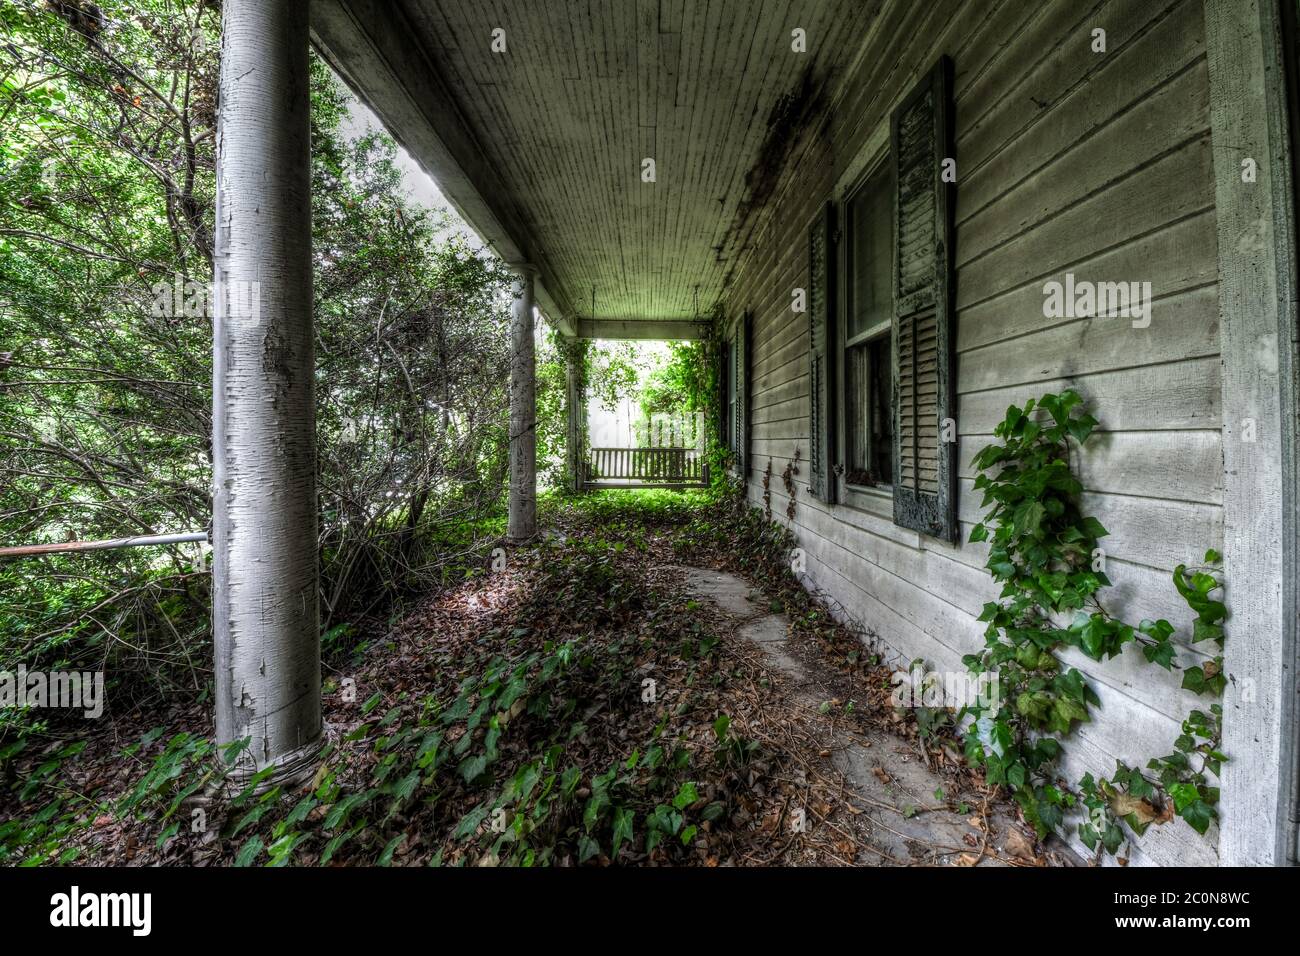 Veranda Schaukel mit Überwuchs auf der Veranda eines verlassenen Hauses Stockfoto